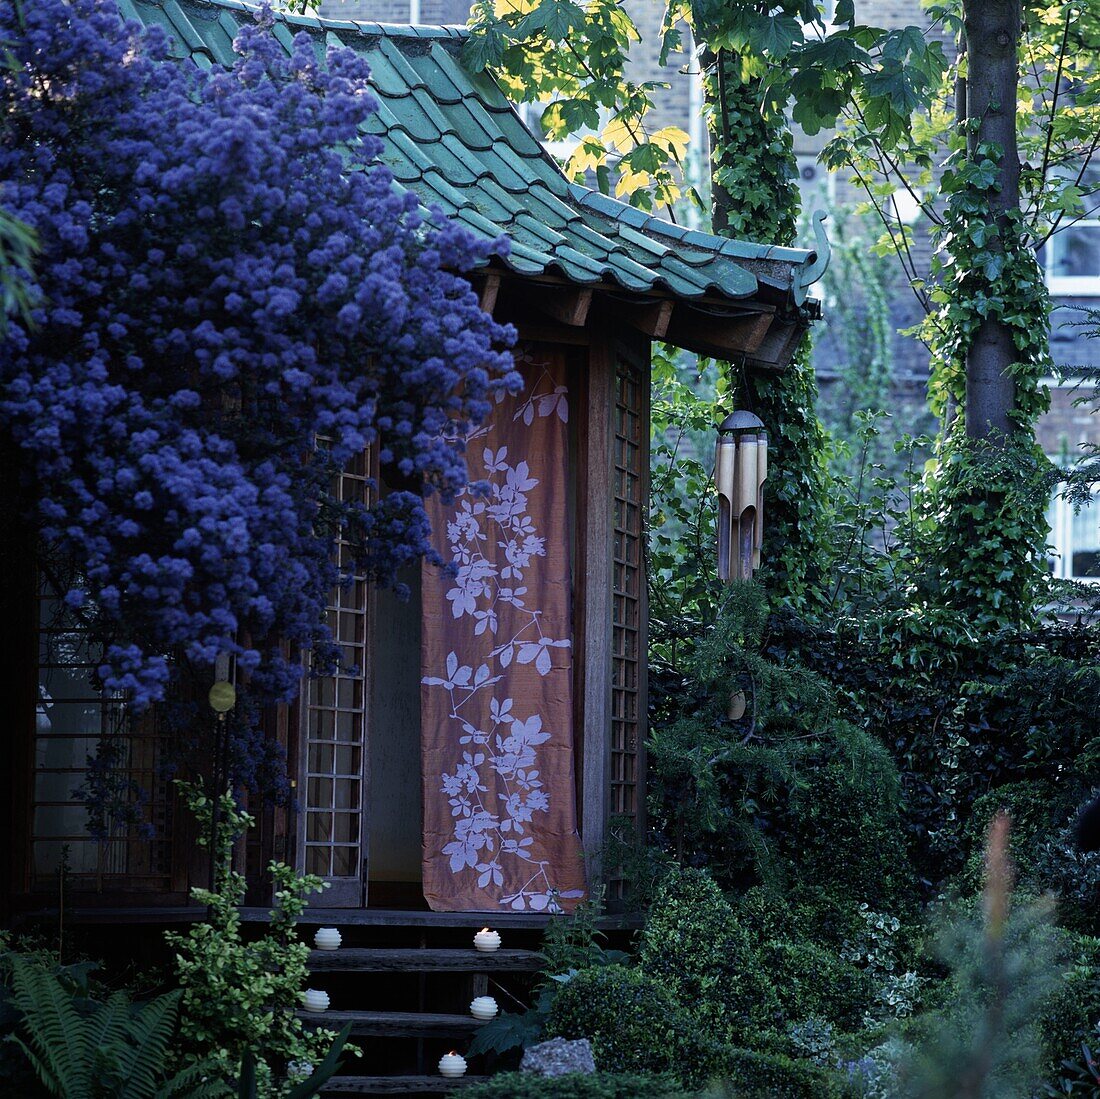 Summer hut in garden among flowers